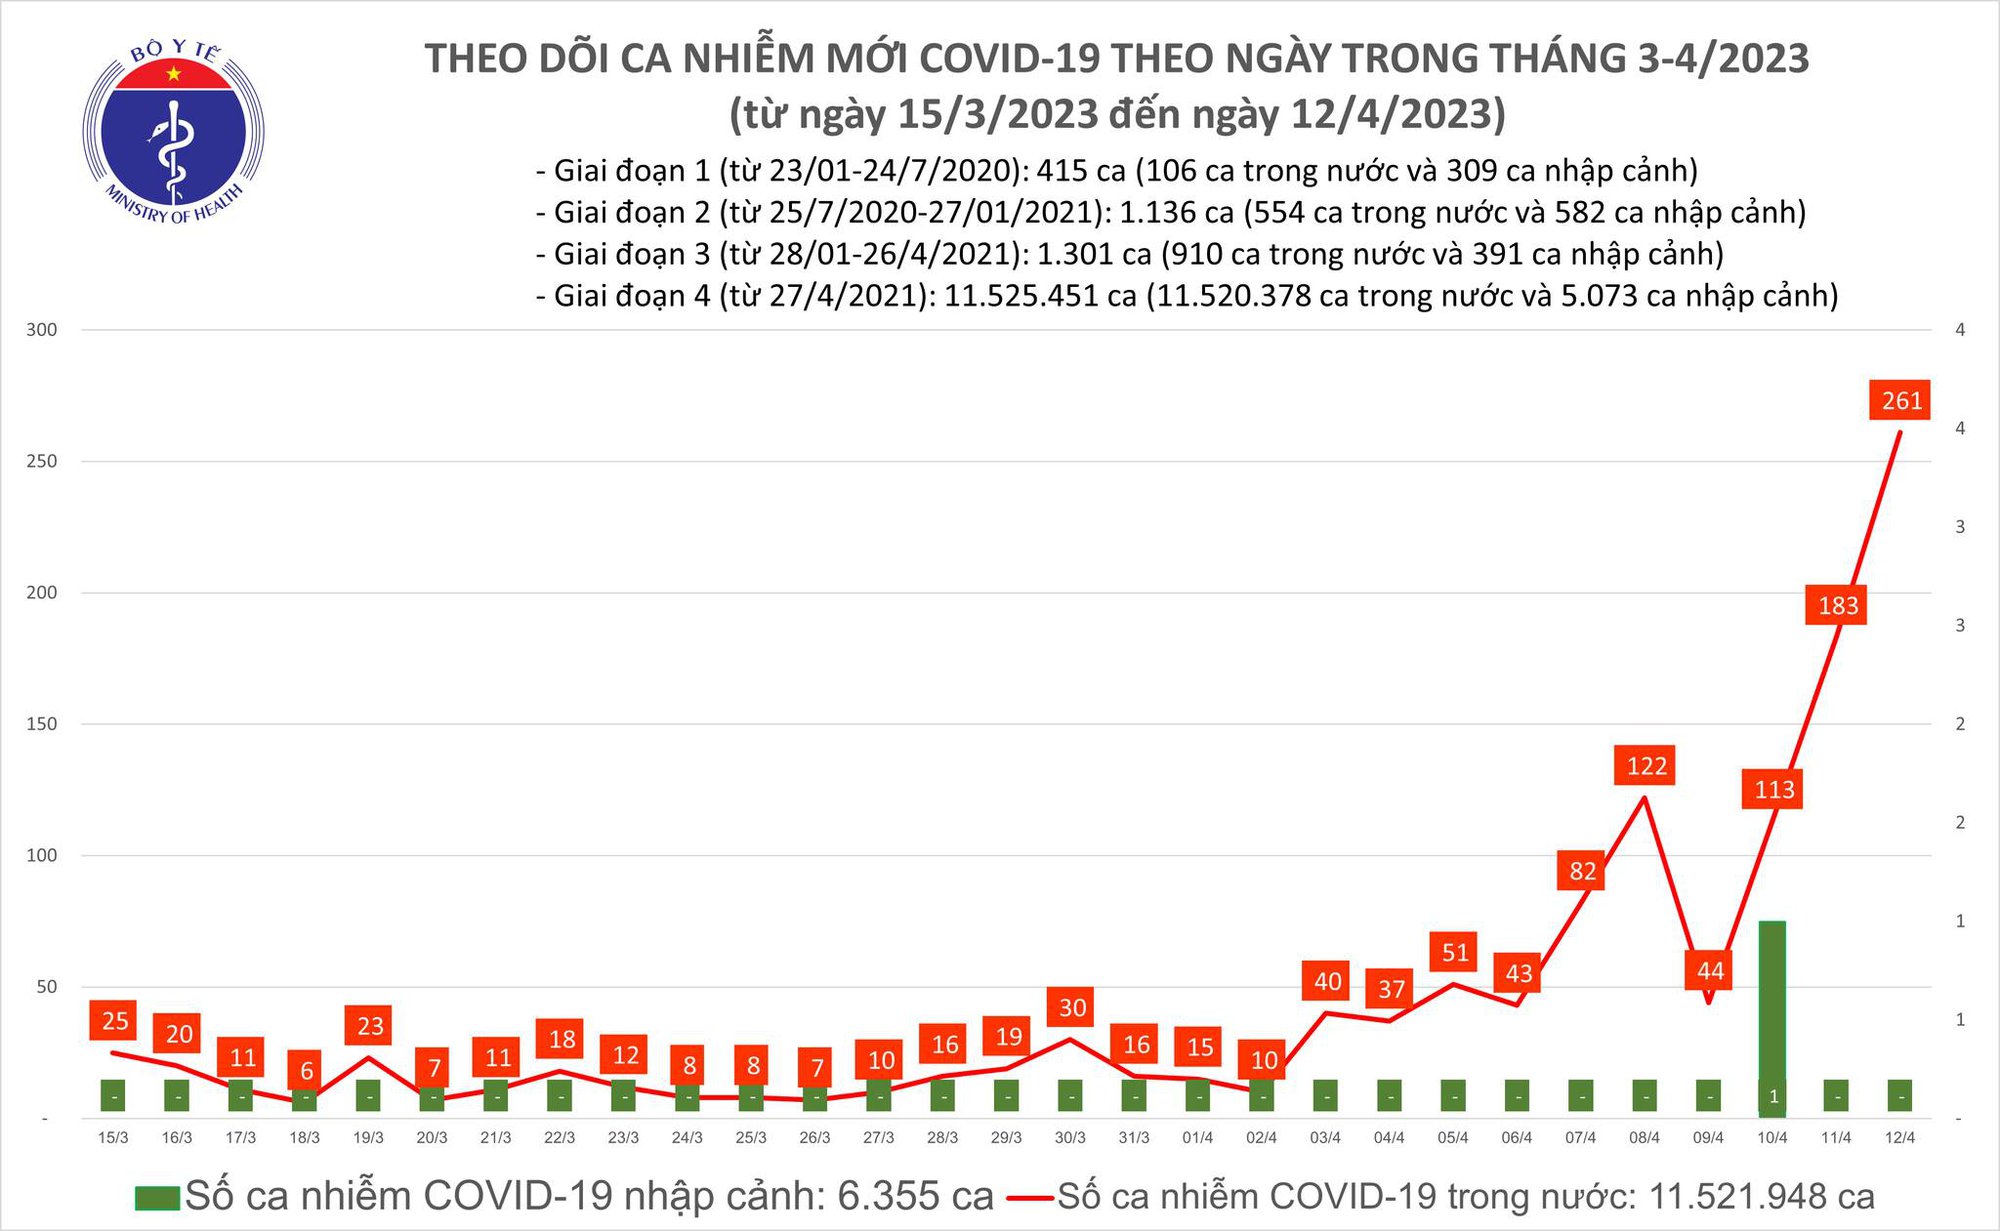 Ngày 12/4: Số COVID-19 tiếp tục tăng đột ngột, lên 261 ca - Ảnh 2.